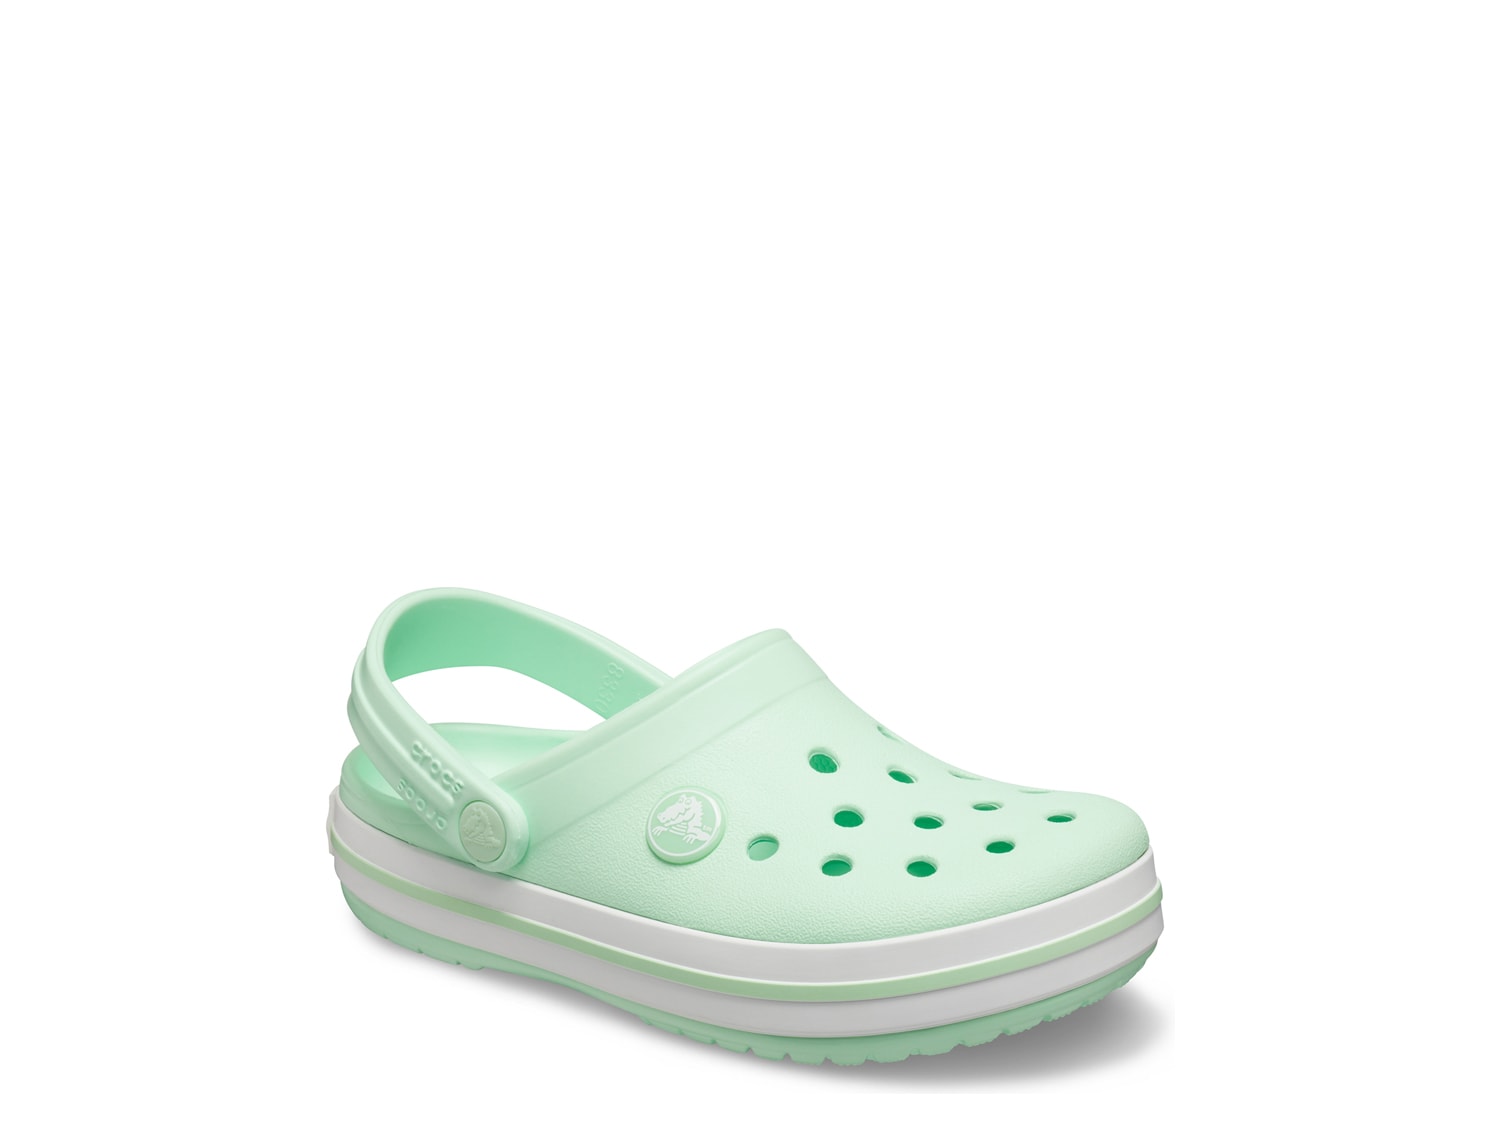 dsw crocs shoes